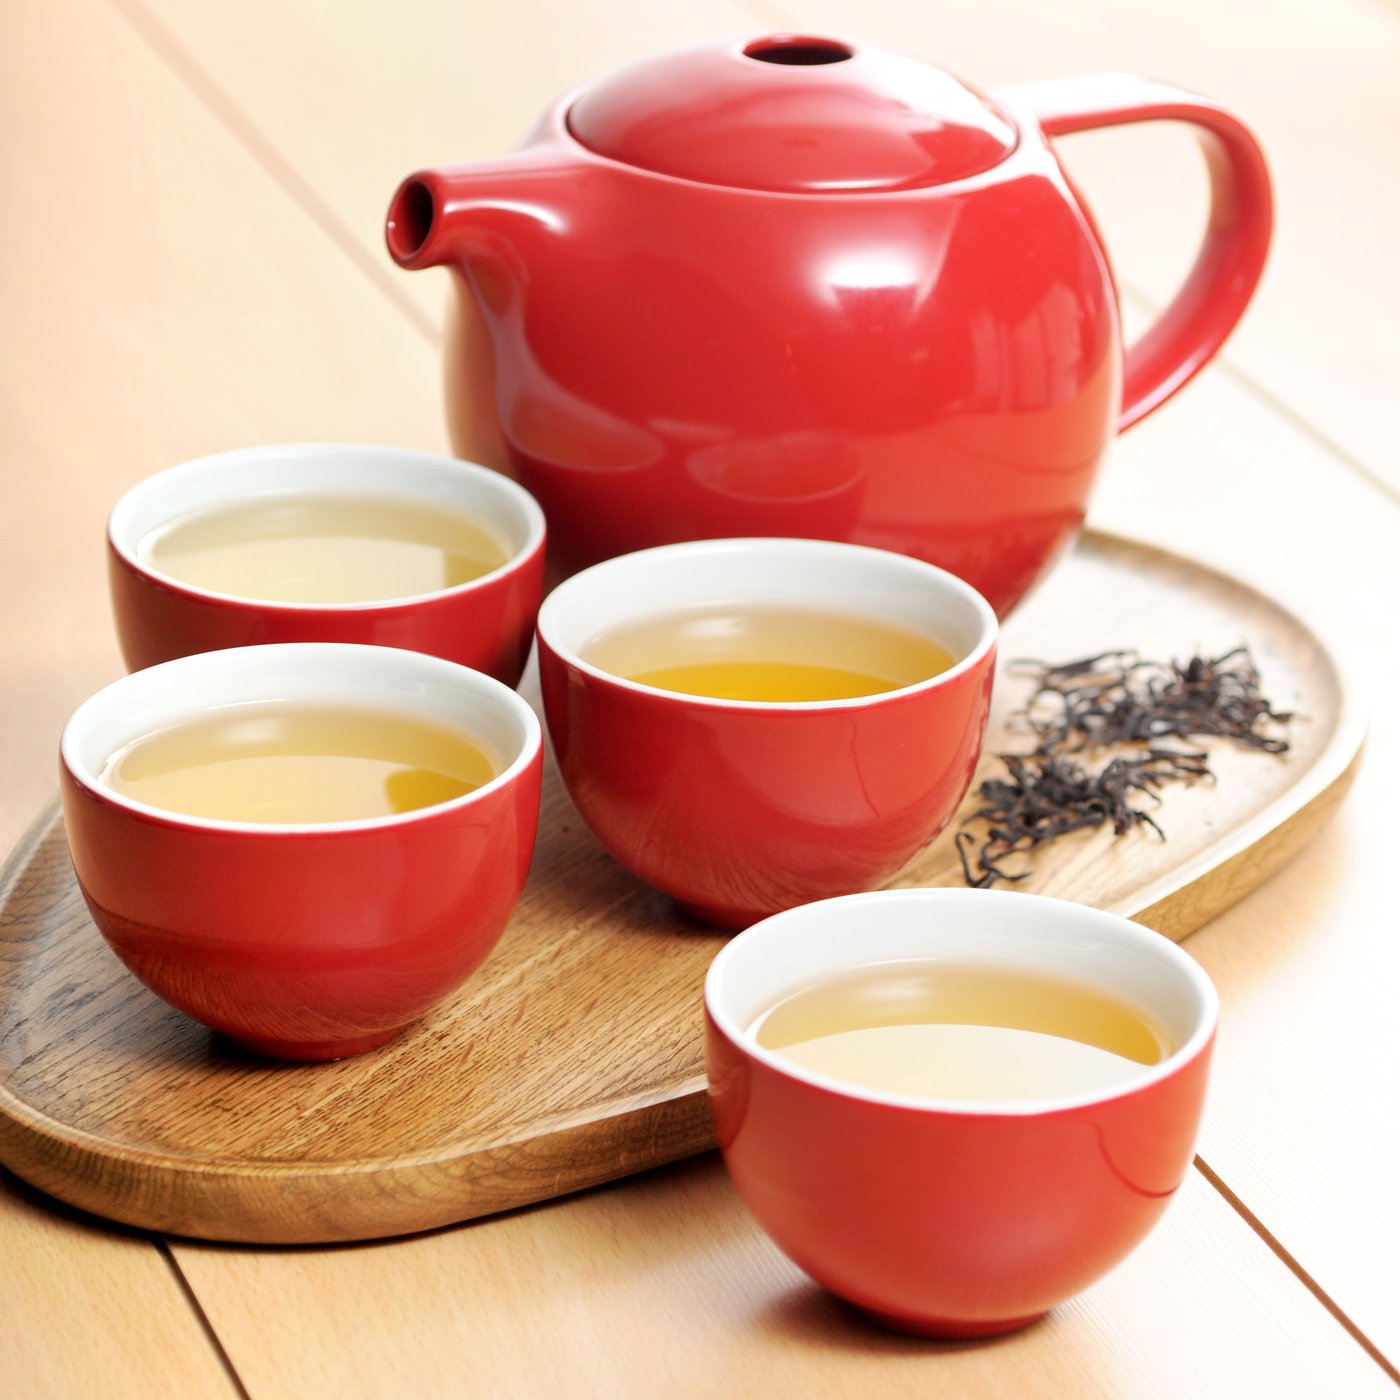 כוס תה אוריינטל 200 מ״ל מקולקציית לוברמיקס פרו תה - Loveramics